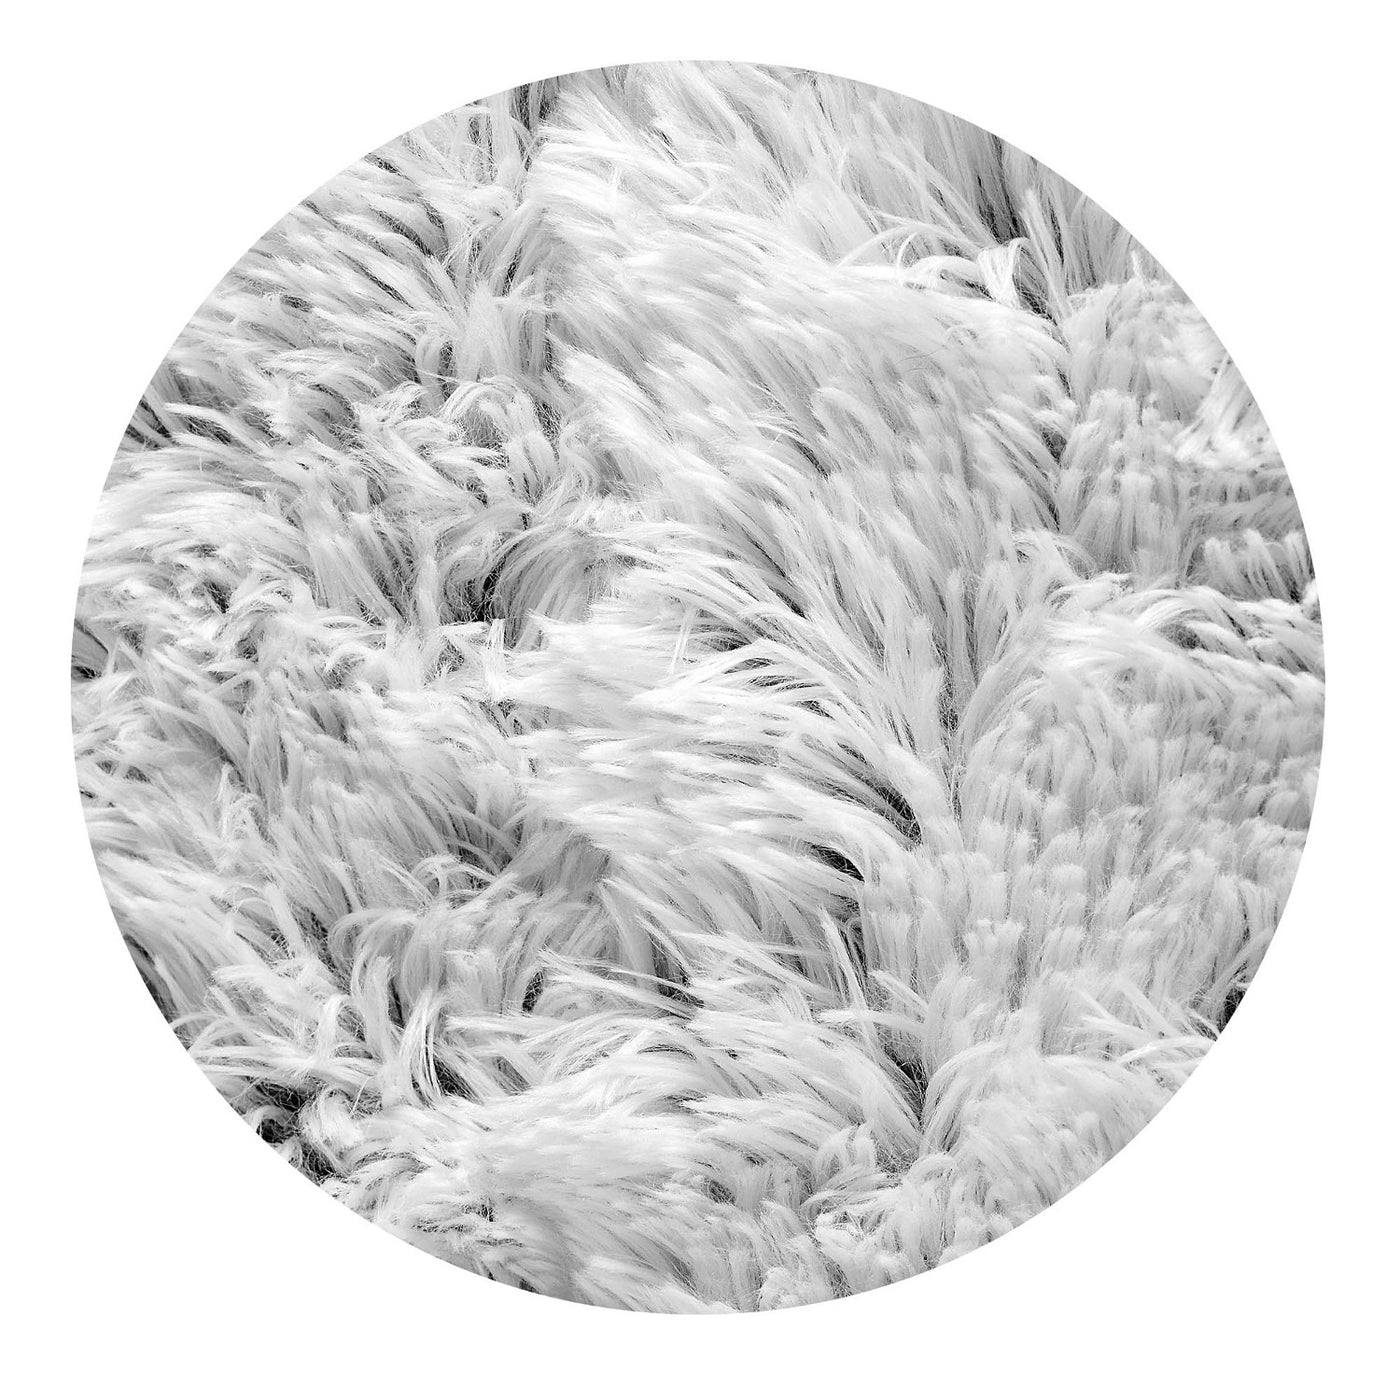 Dywan pluszowy, krótki włos, antypoślizgowy, 160 x 220 cm, biały, DYWSHA160/220BIA